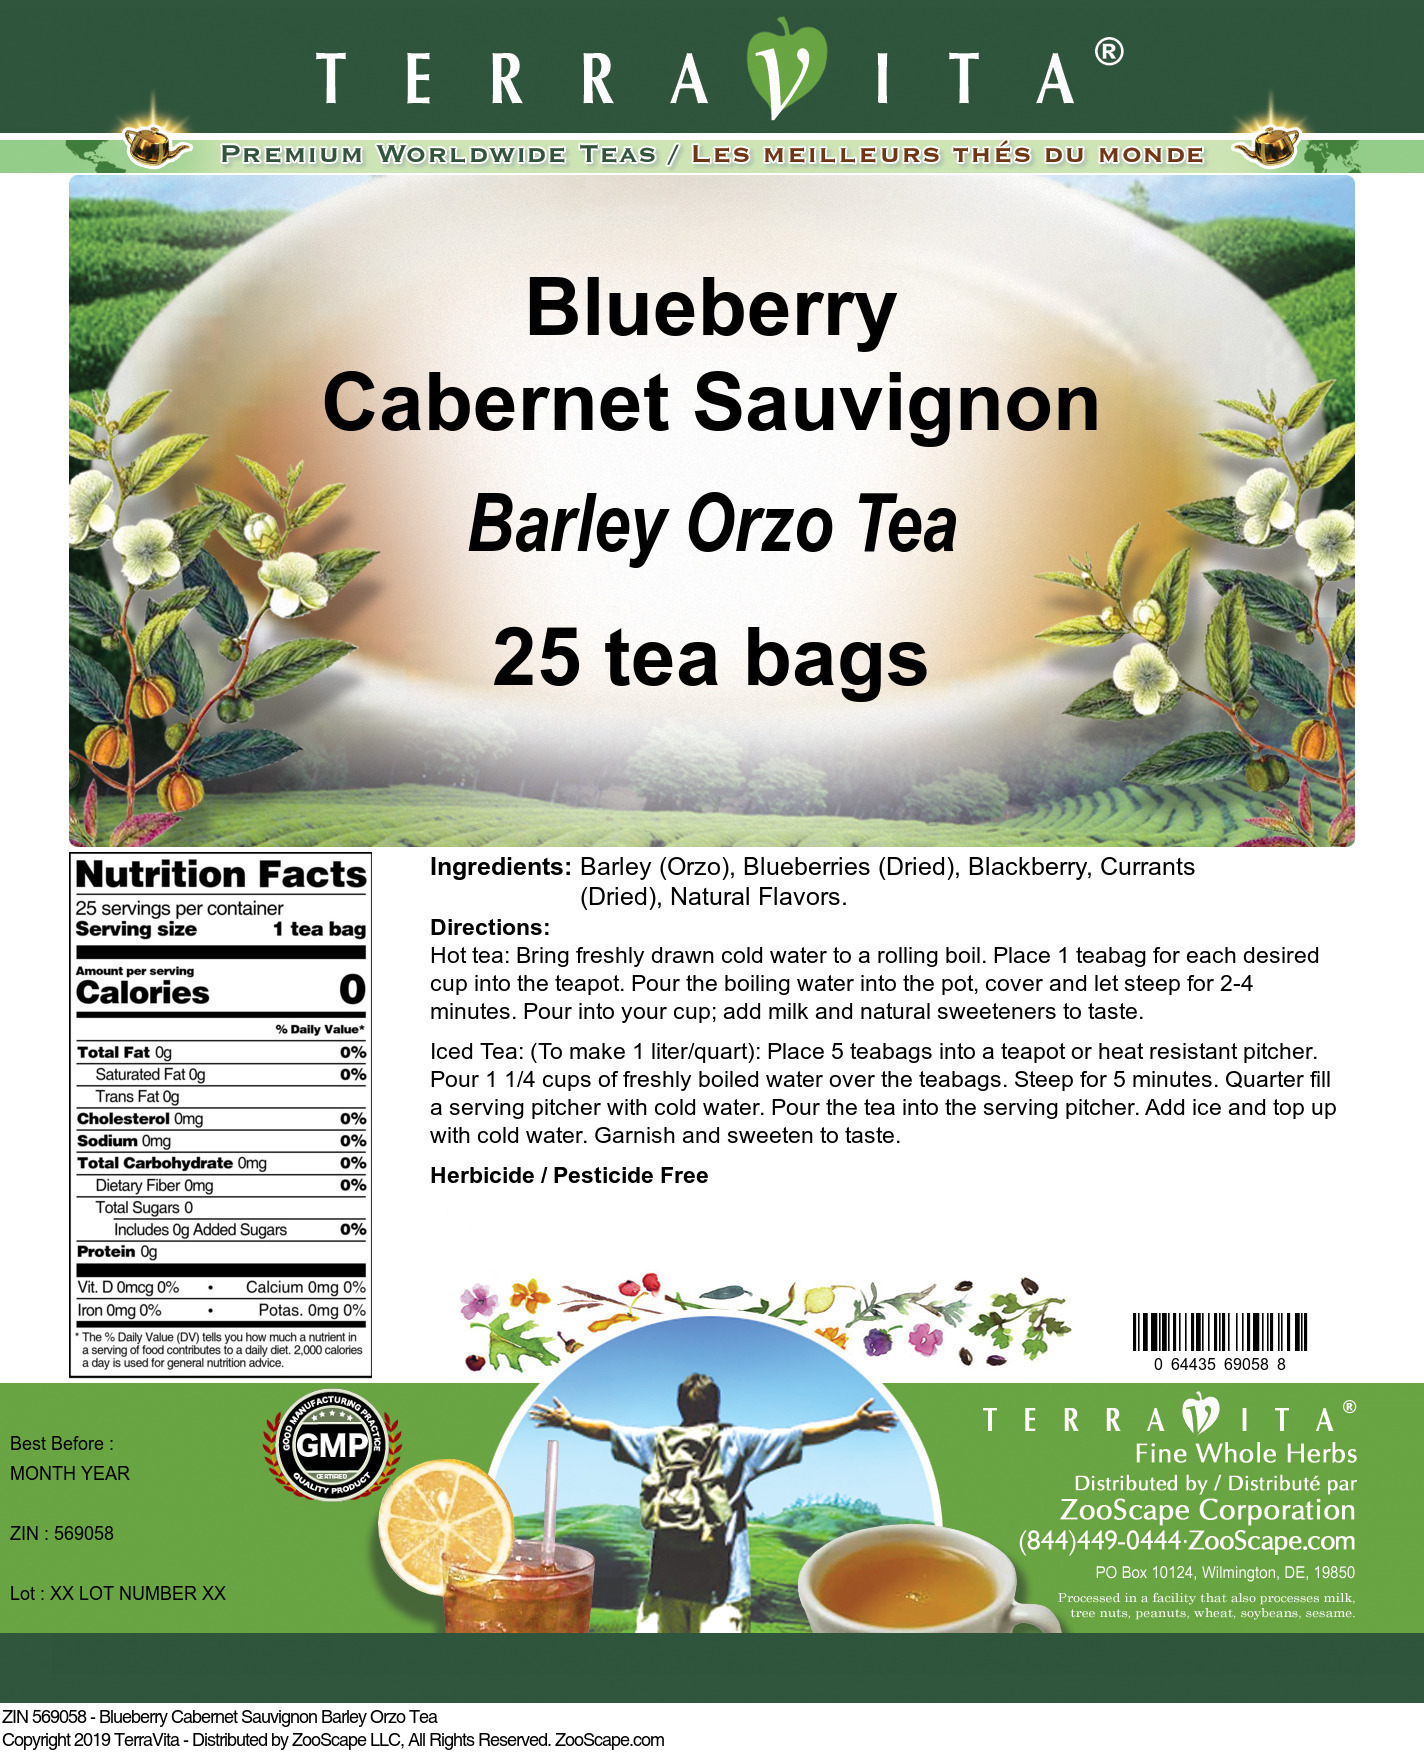 Blueberry Cabernet Sauvignon Barley Orzo Tea - Label